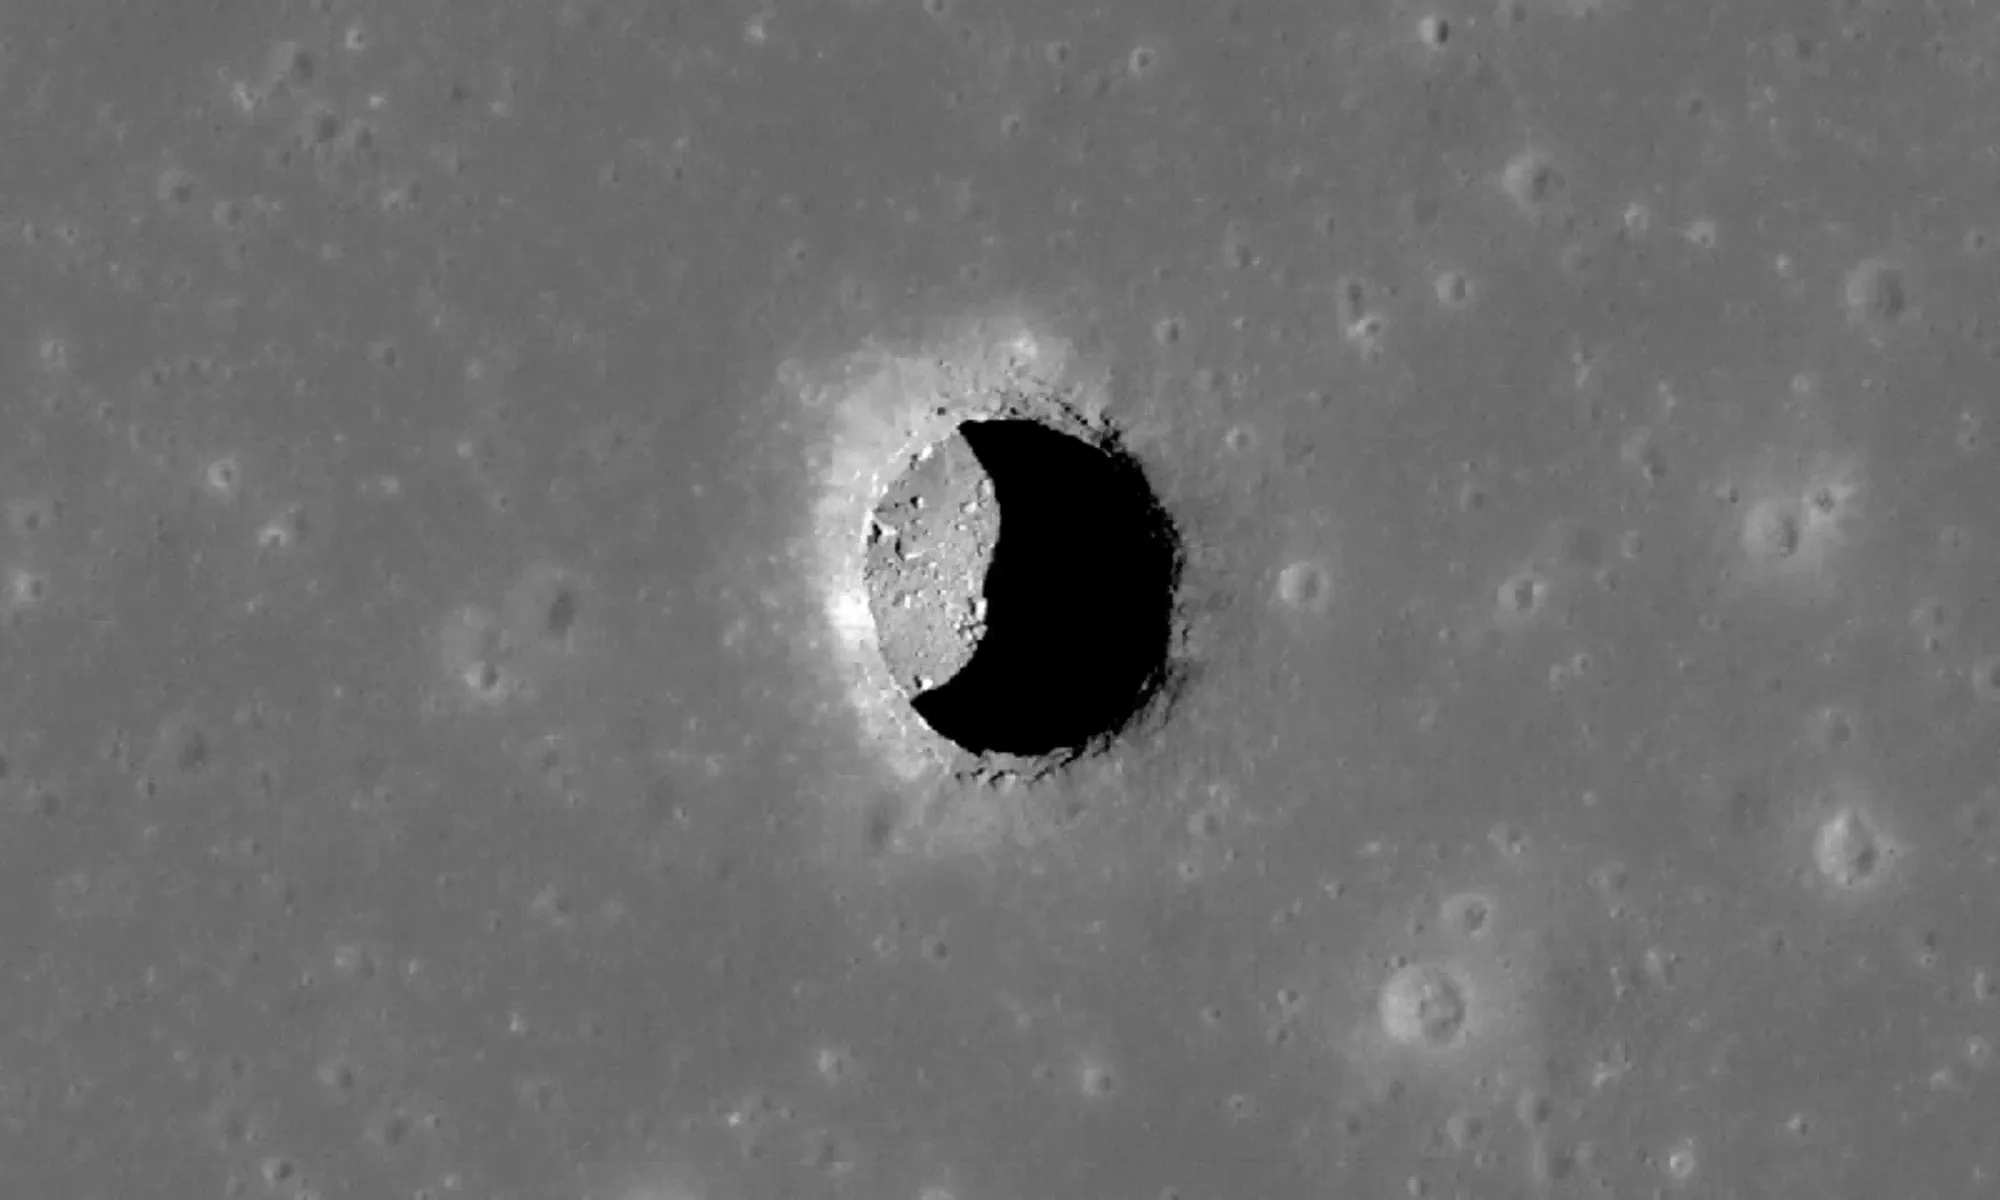 Астронавты обнаружили на Луне крупную подземную пещеру